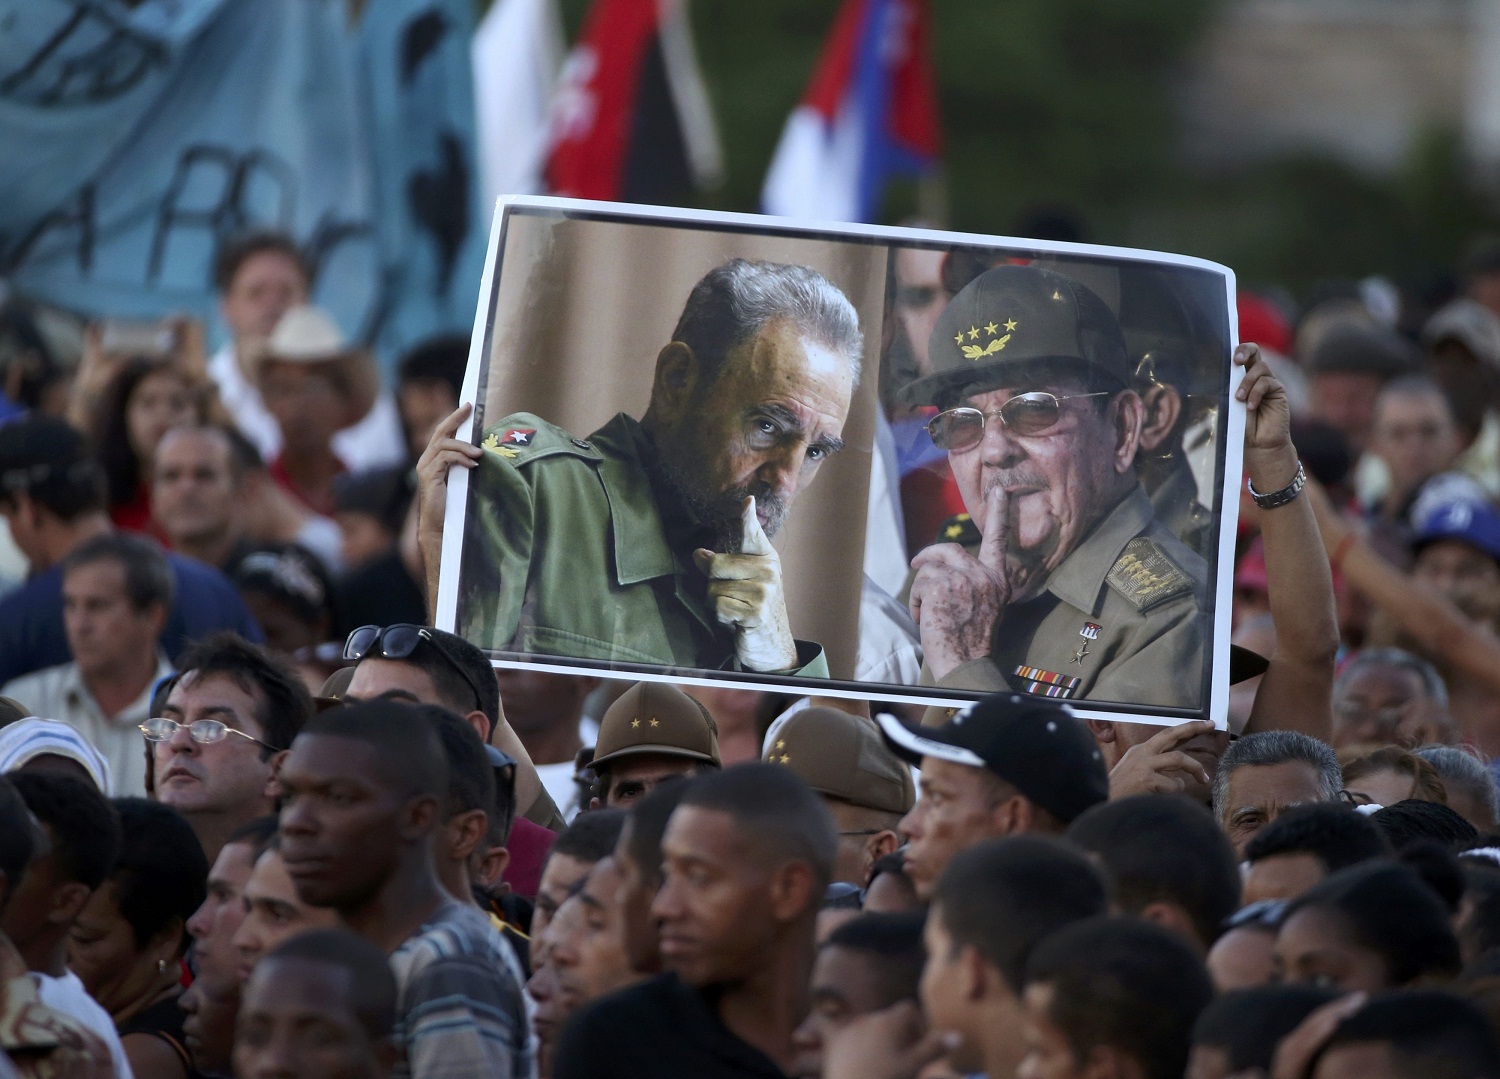 Raúl Castro despide a su hermano Fidel con un paseo por la historia